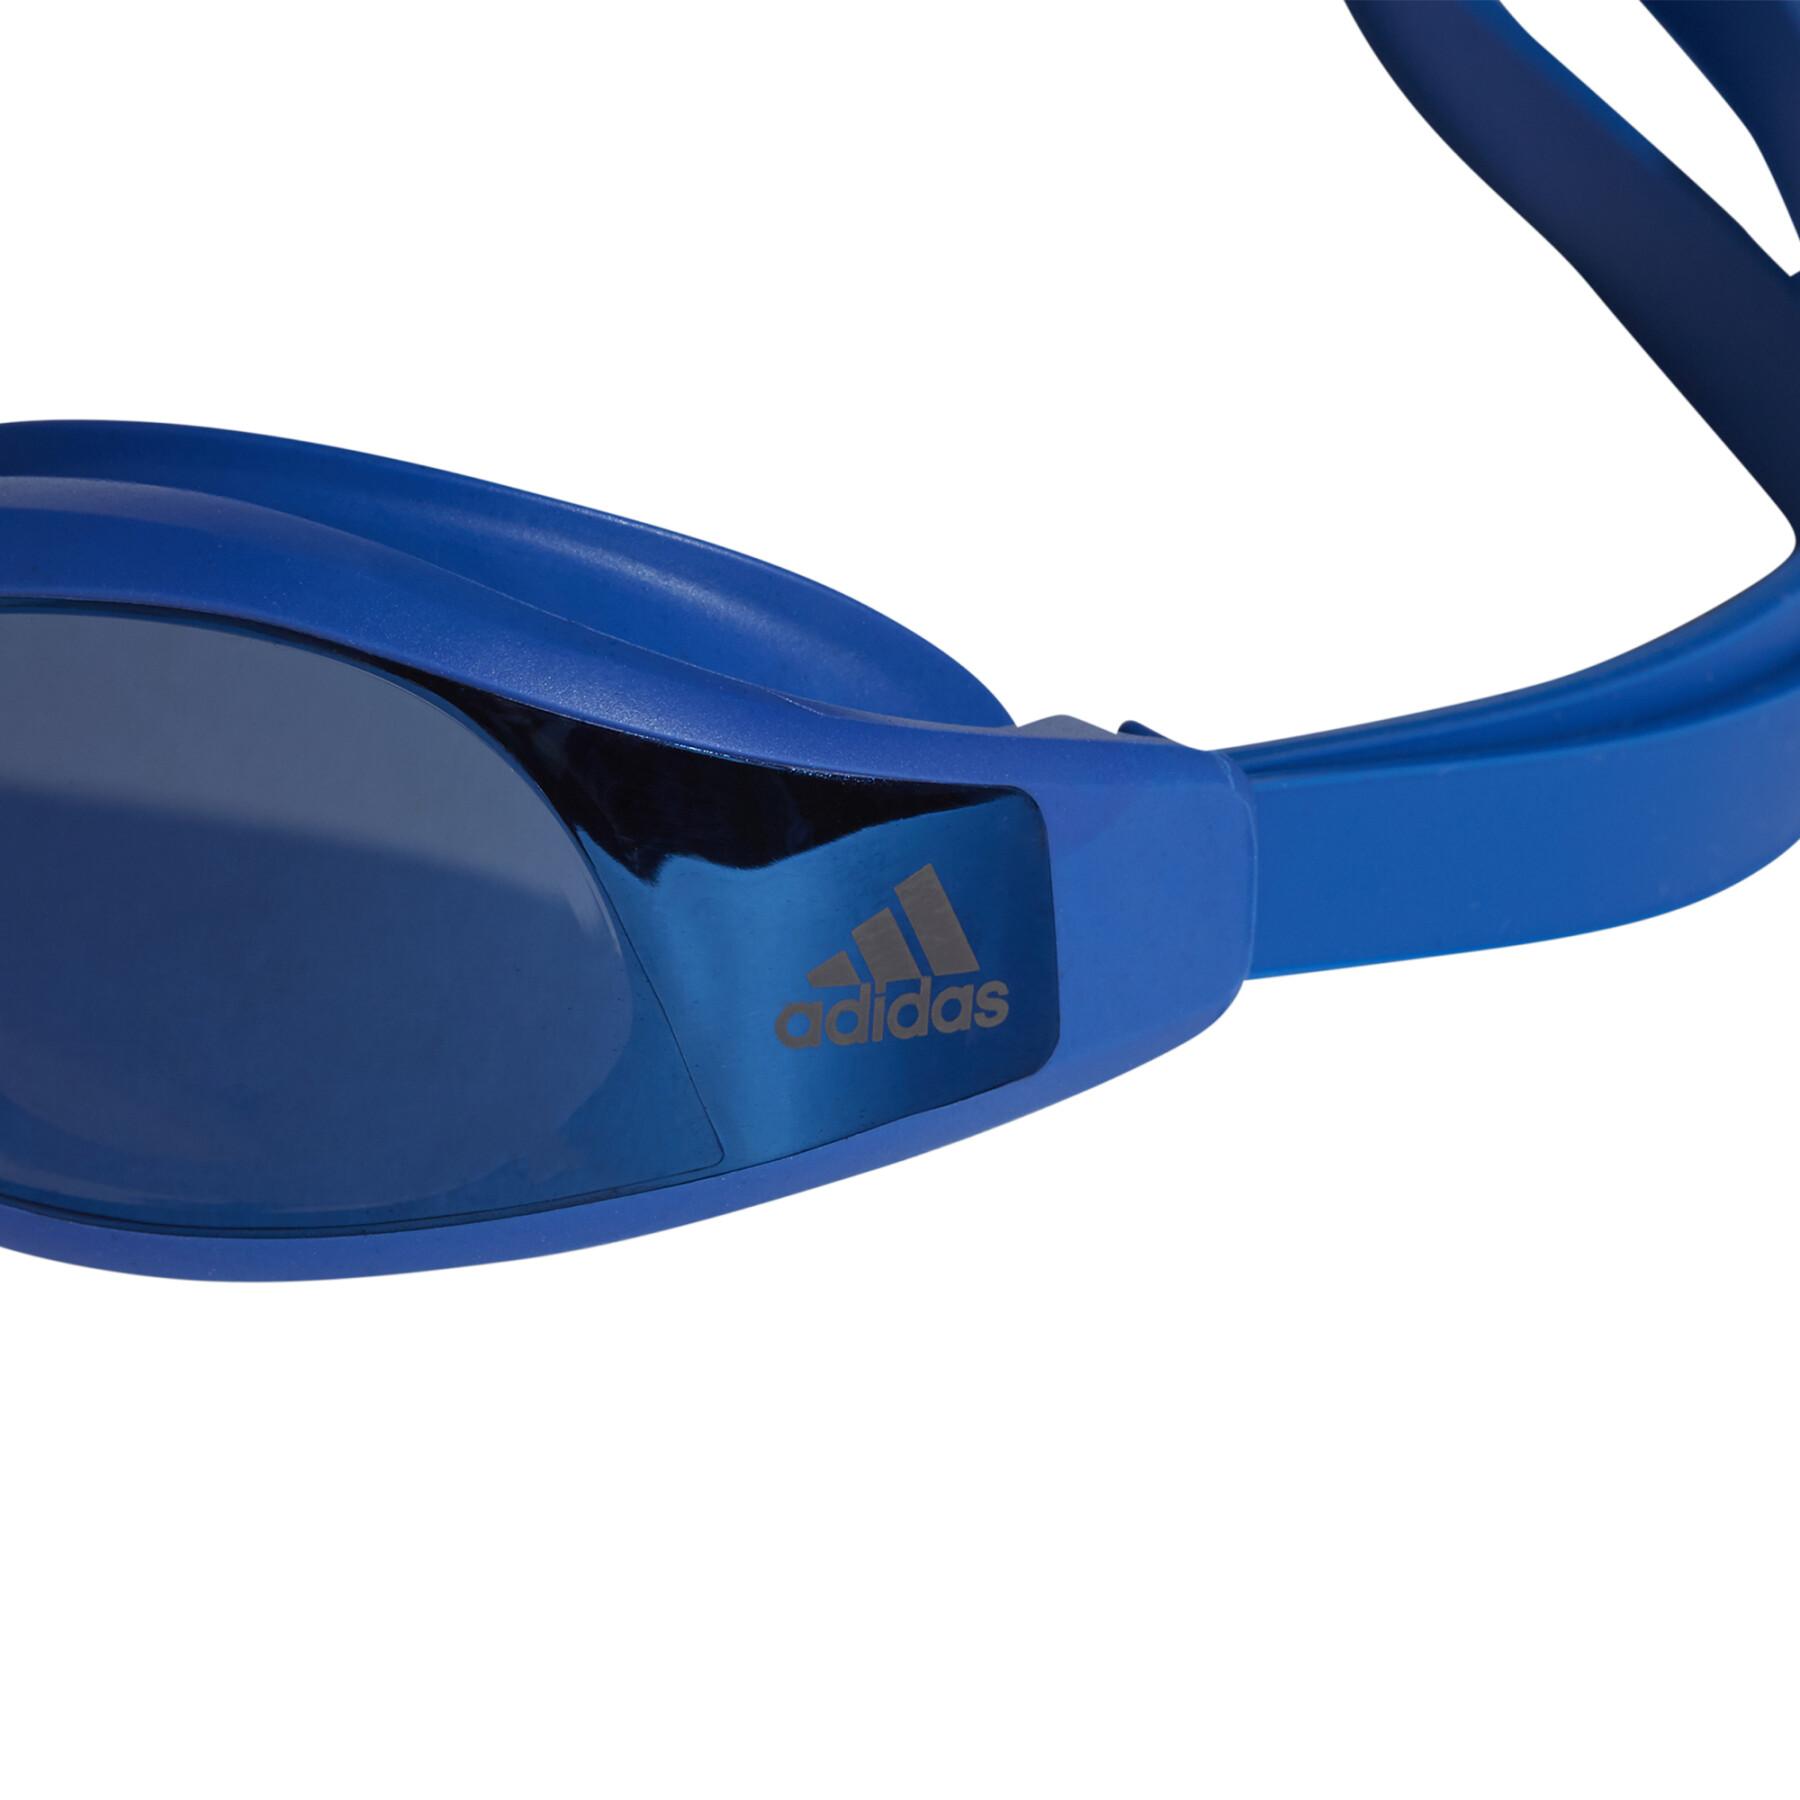 Óculos de natação com efeito espelho adidas persistar race